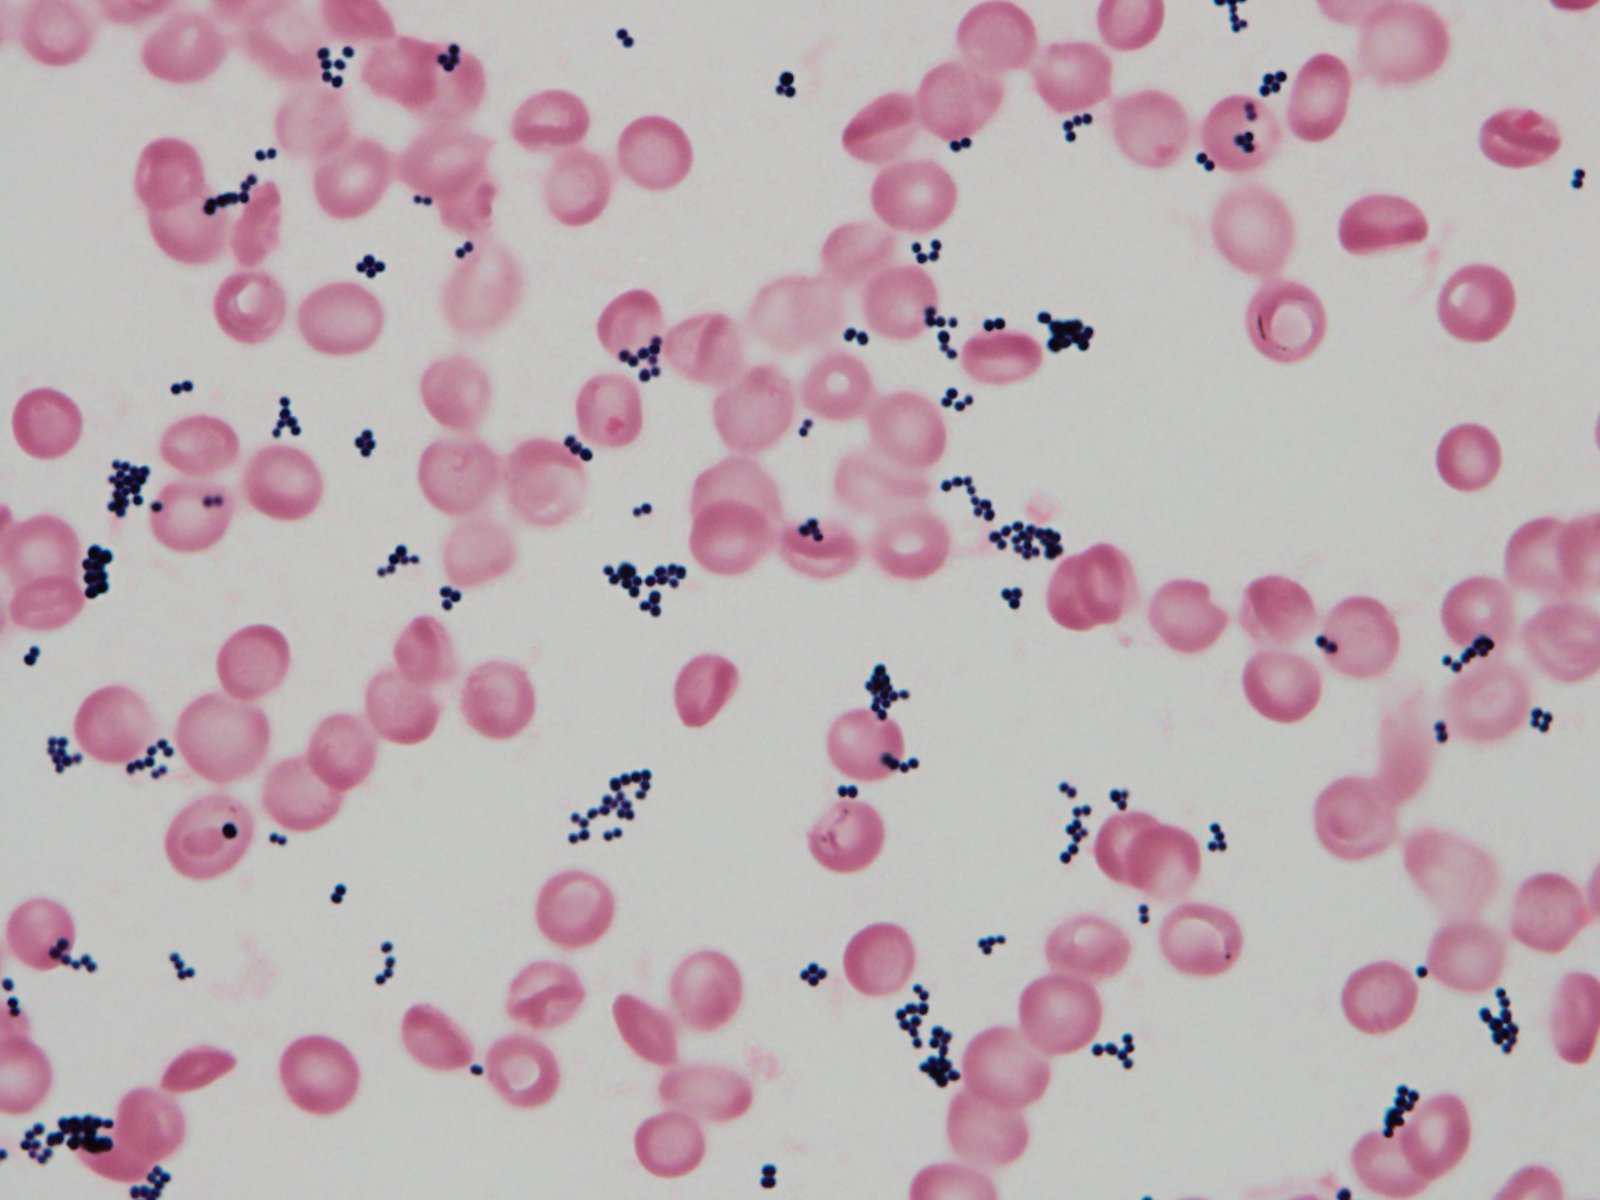 黄色ブドウ球菌菌血症 SAB: Staphylococcus aureus bacteremia